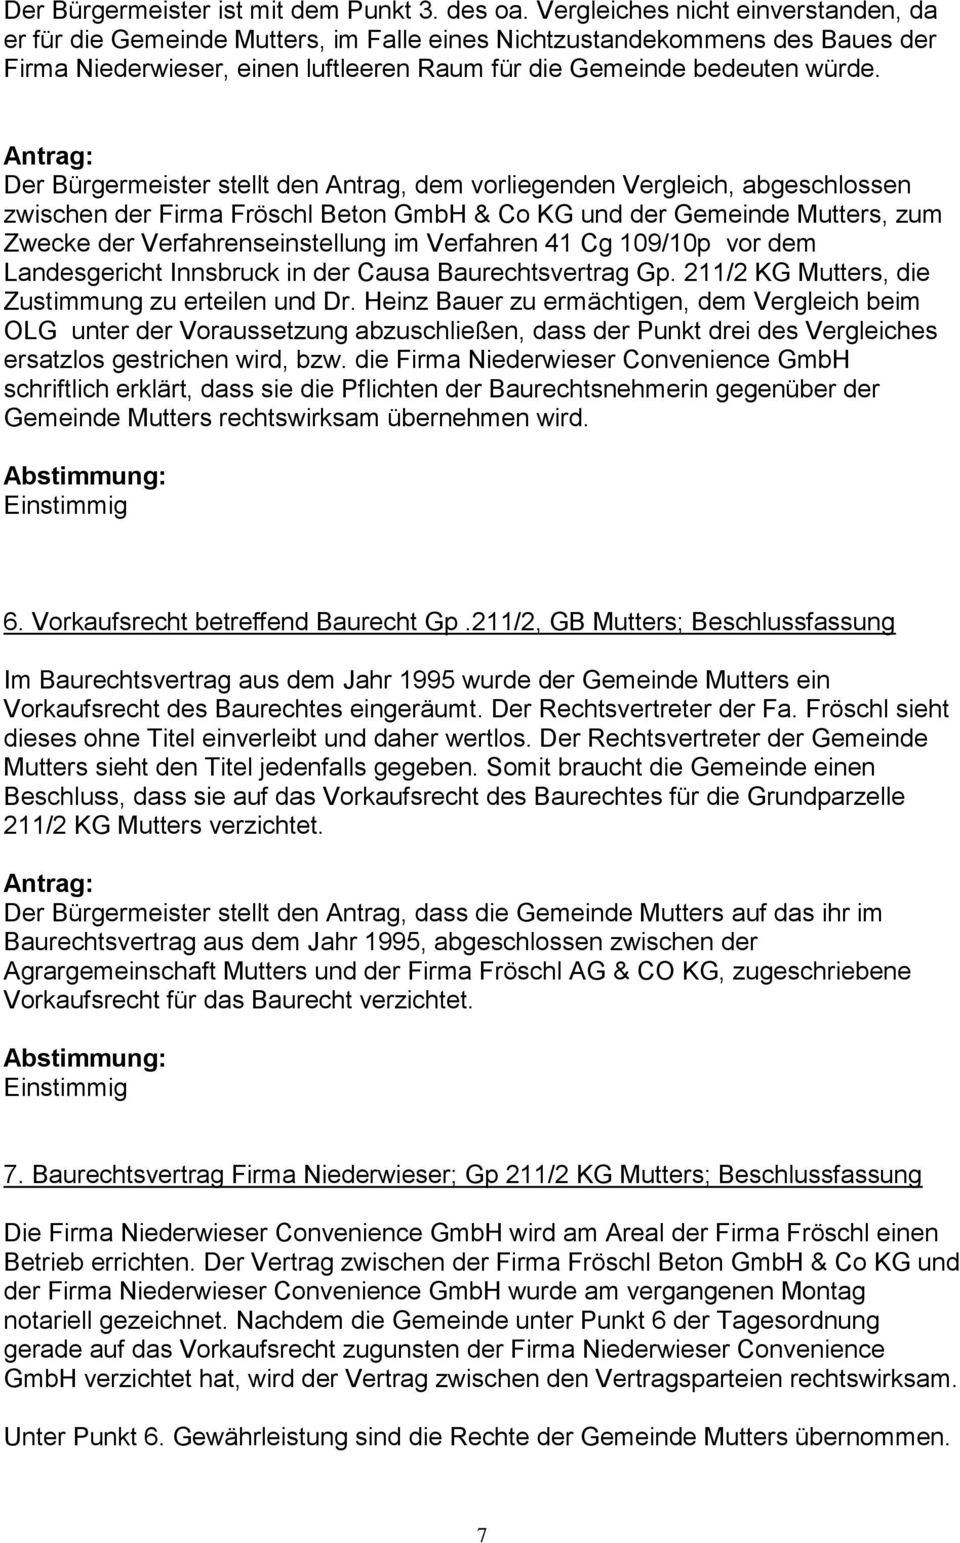 Antrag: Der Bürgermeister stellt den Antrag, dem vorliegenden Vergleich, abgeschlossen zwischen der Firma Fröschl Beton GmbH & Co KG und der Gemeinde Mutters, zum Zwecke der Verfahrenseinstellung im